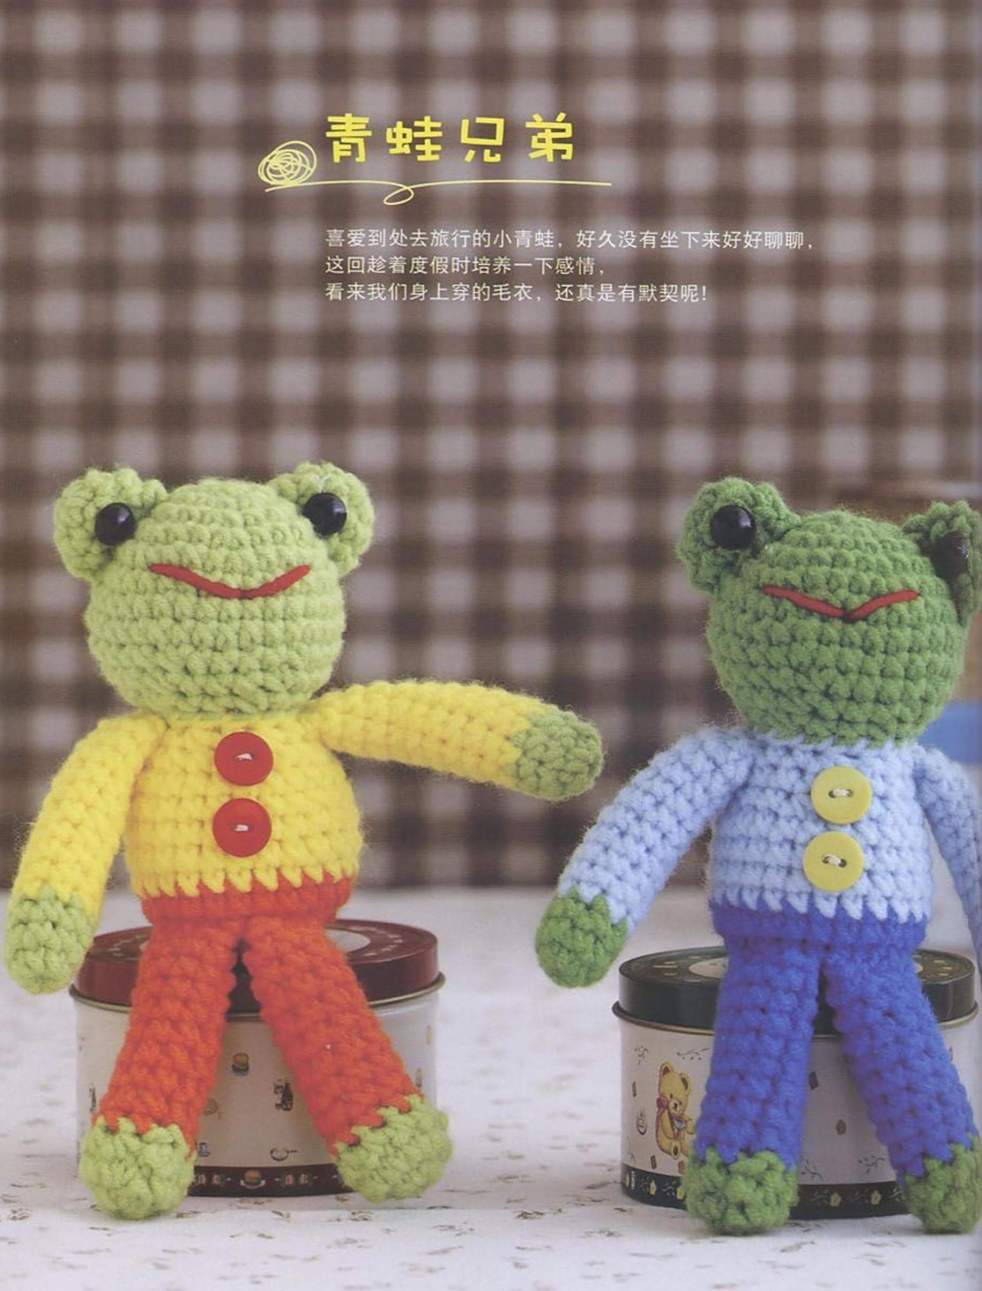 Cute frogs easy crochet amigurumi pattern